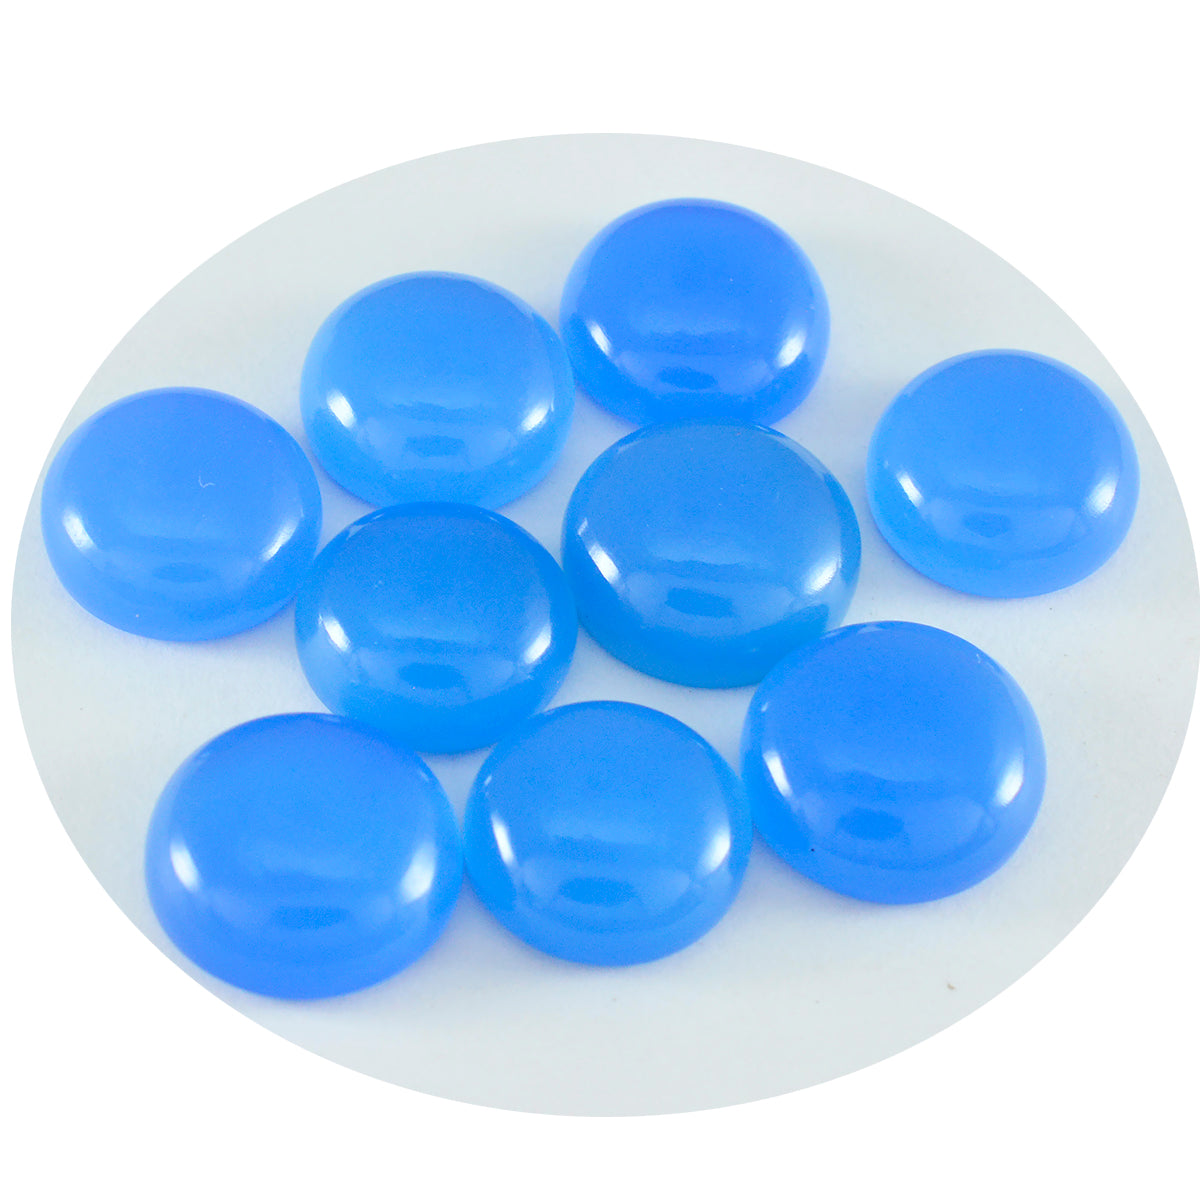 riyogems 1шт синий халцедон кабошон 6x6 мм круглая форма хорошее качество драгоценные камни